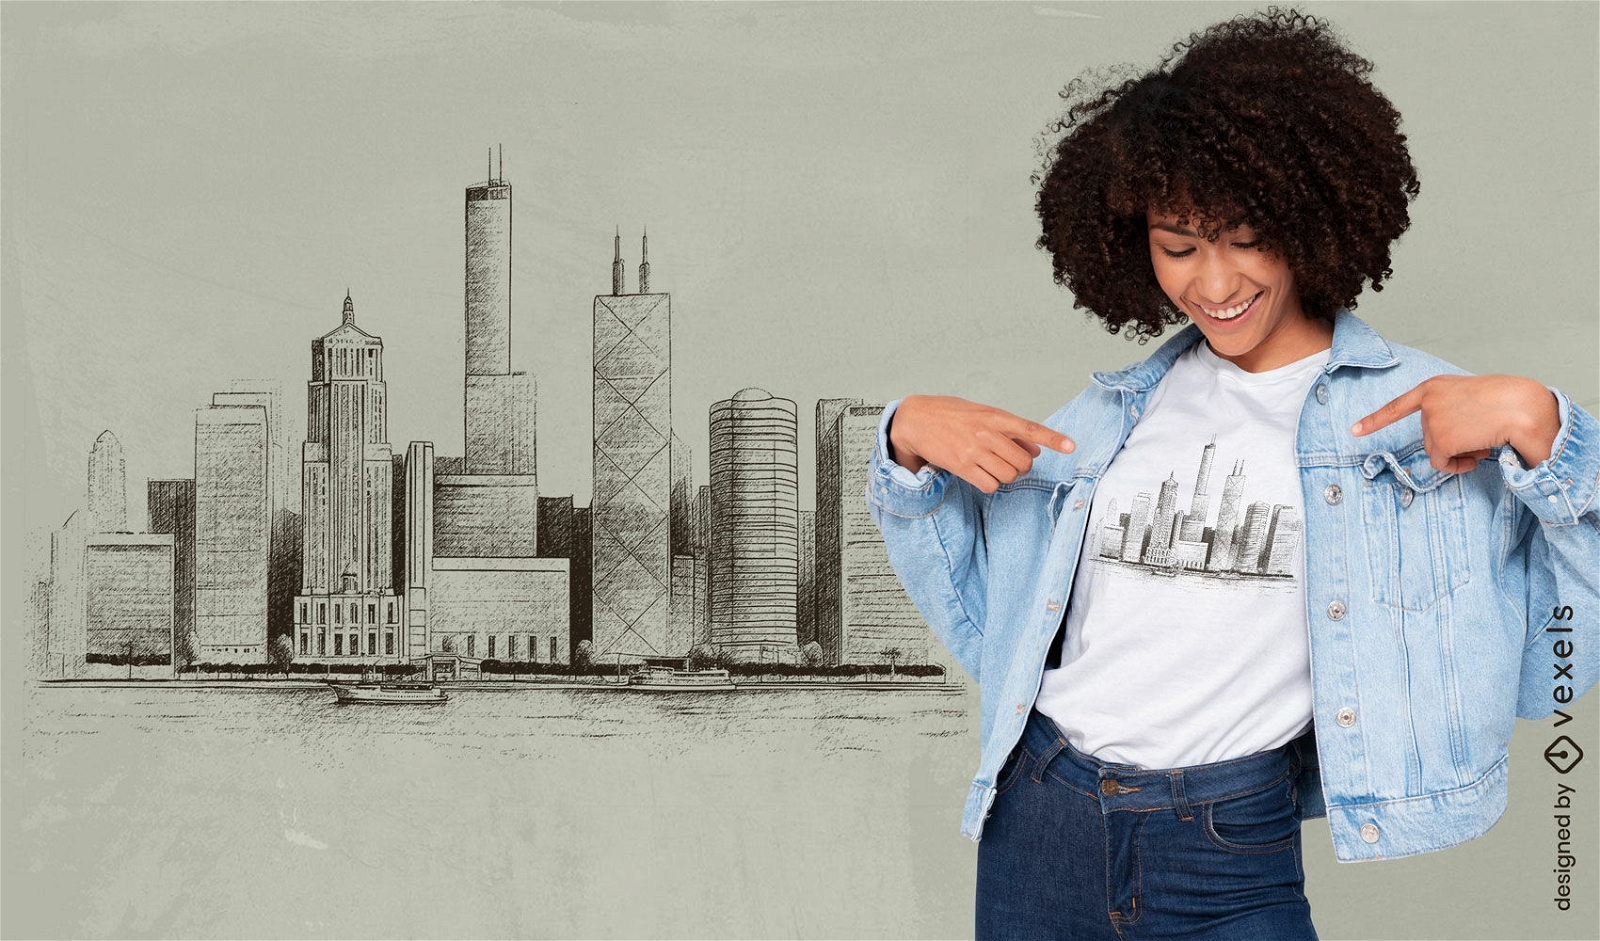 Dise?o de camiseta bosquejado del horizonte de Chicago.